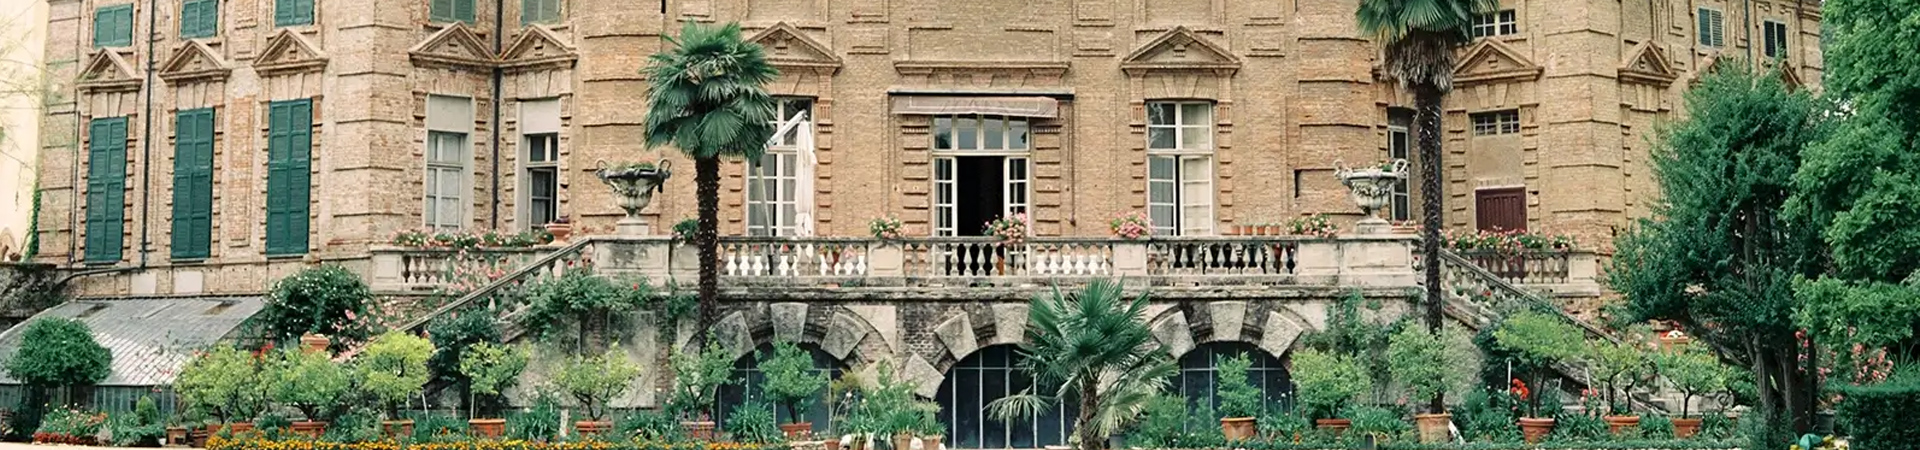 Castello di Collegno - Location matrimoni Il Briccone Torino